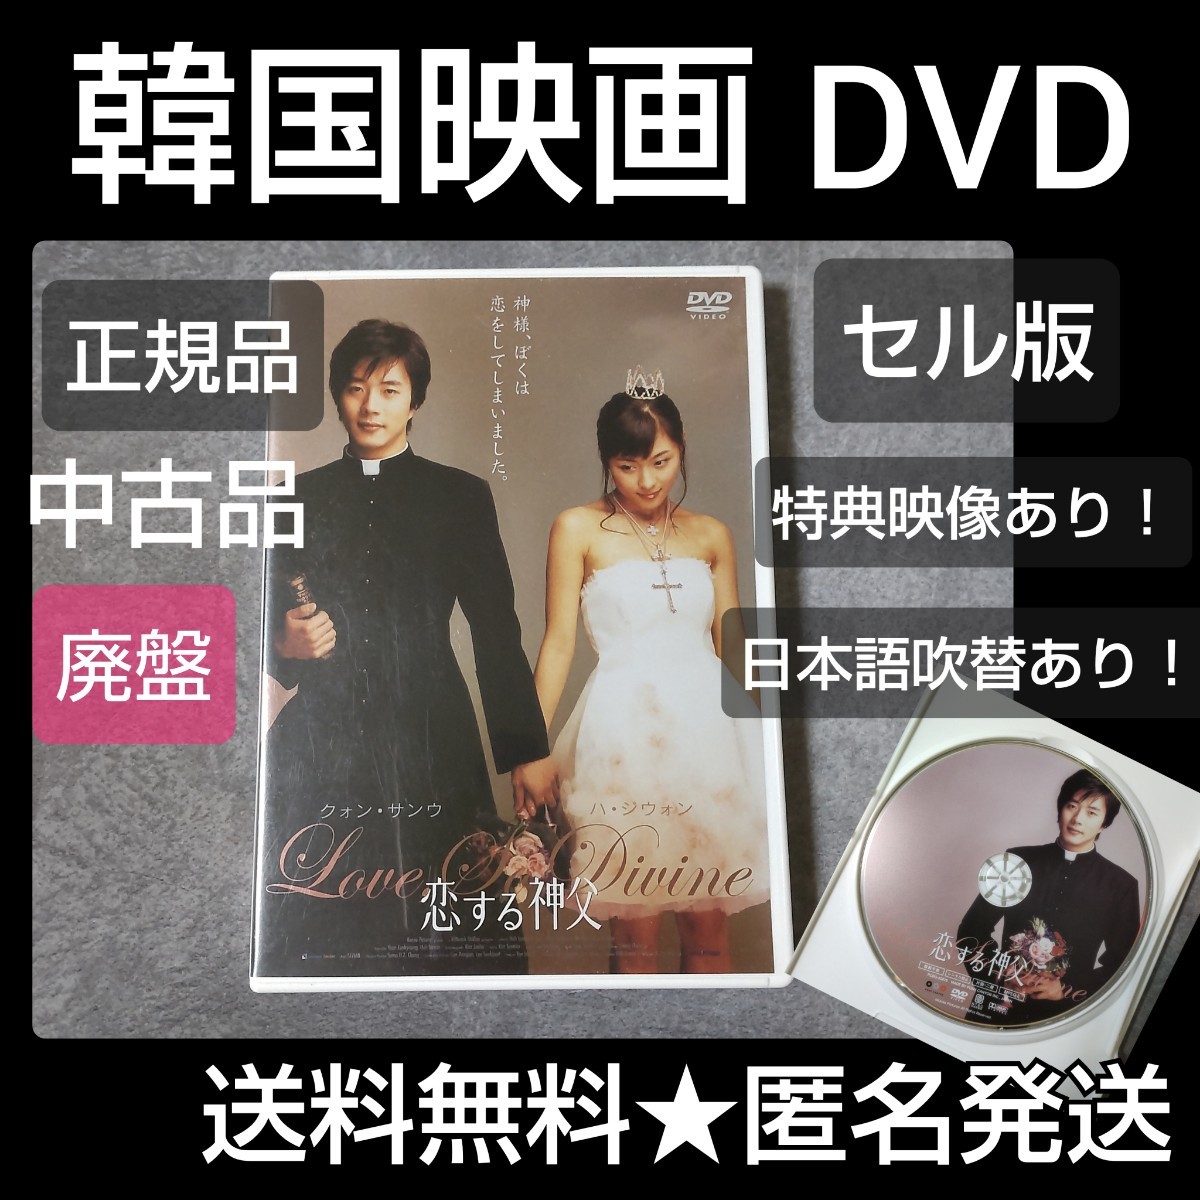 【廃盤】DVD(セル版)『恋する神父 スタンダード版』中古品 クォン・サンウ_画像1